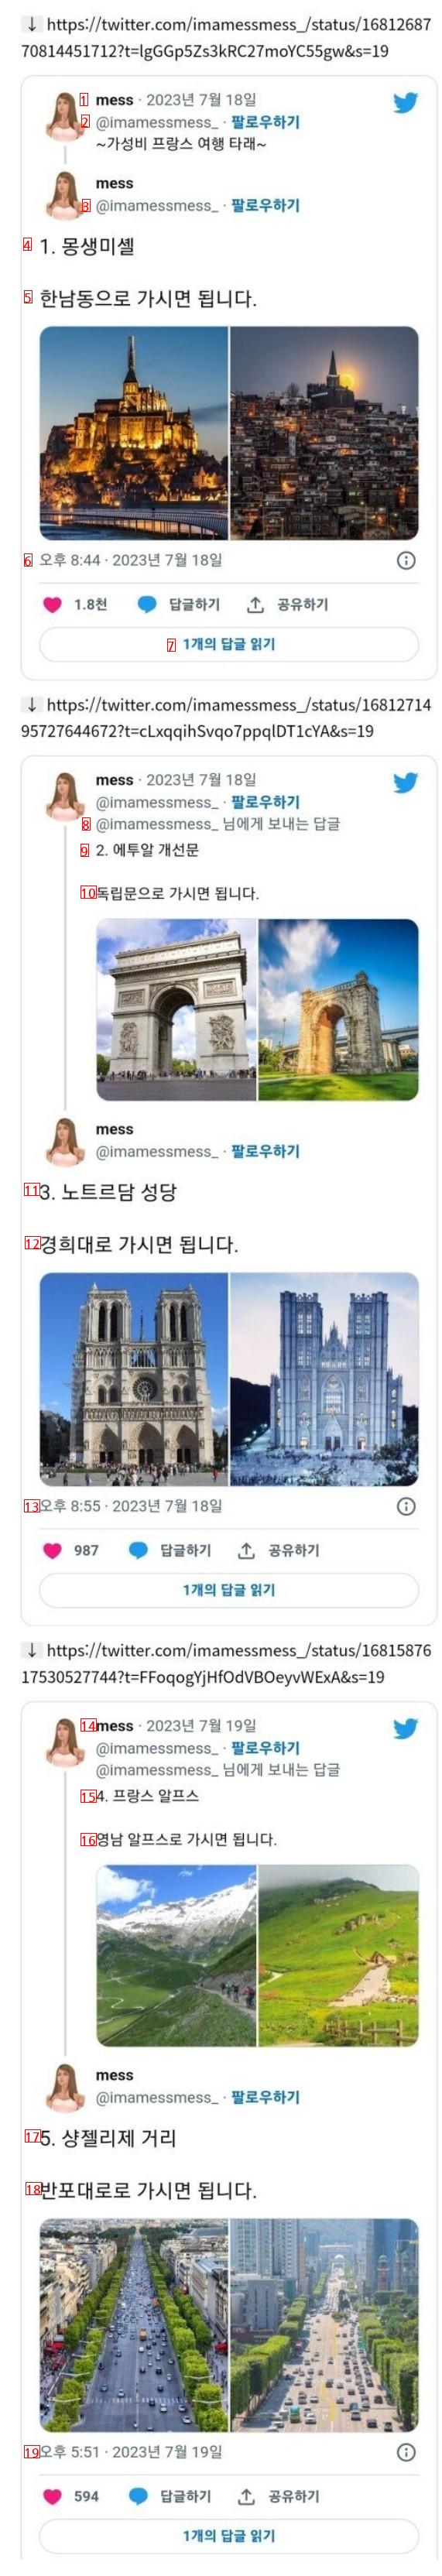 ''한국에서 가성비로 프랑스 여행하는법''을 봤다는 국제커플